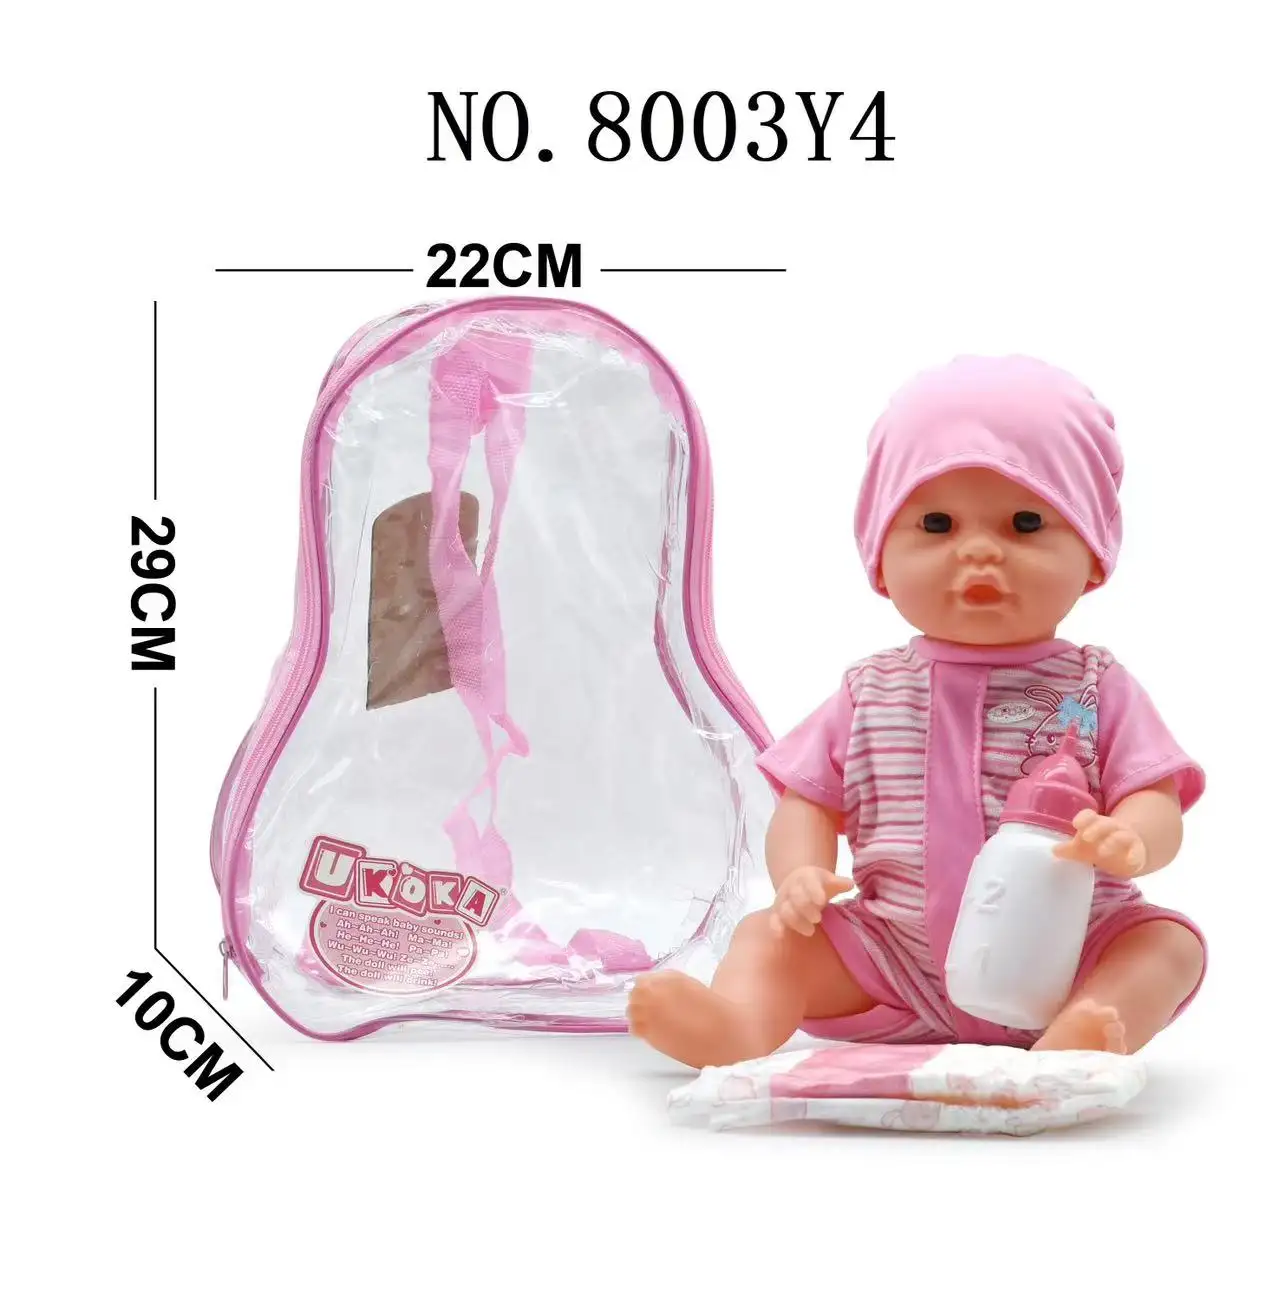 Ce mainan paling populer plastik lembut 16 inci vinil realistis gadis boneka kencing mainan untuk bayi baru lahir